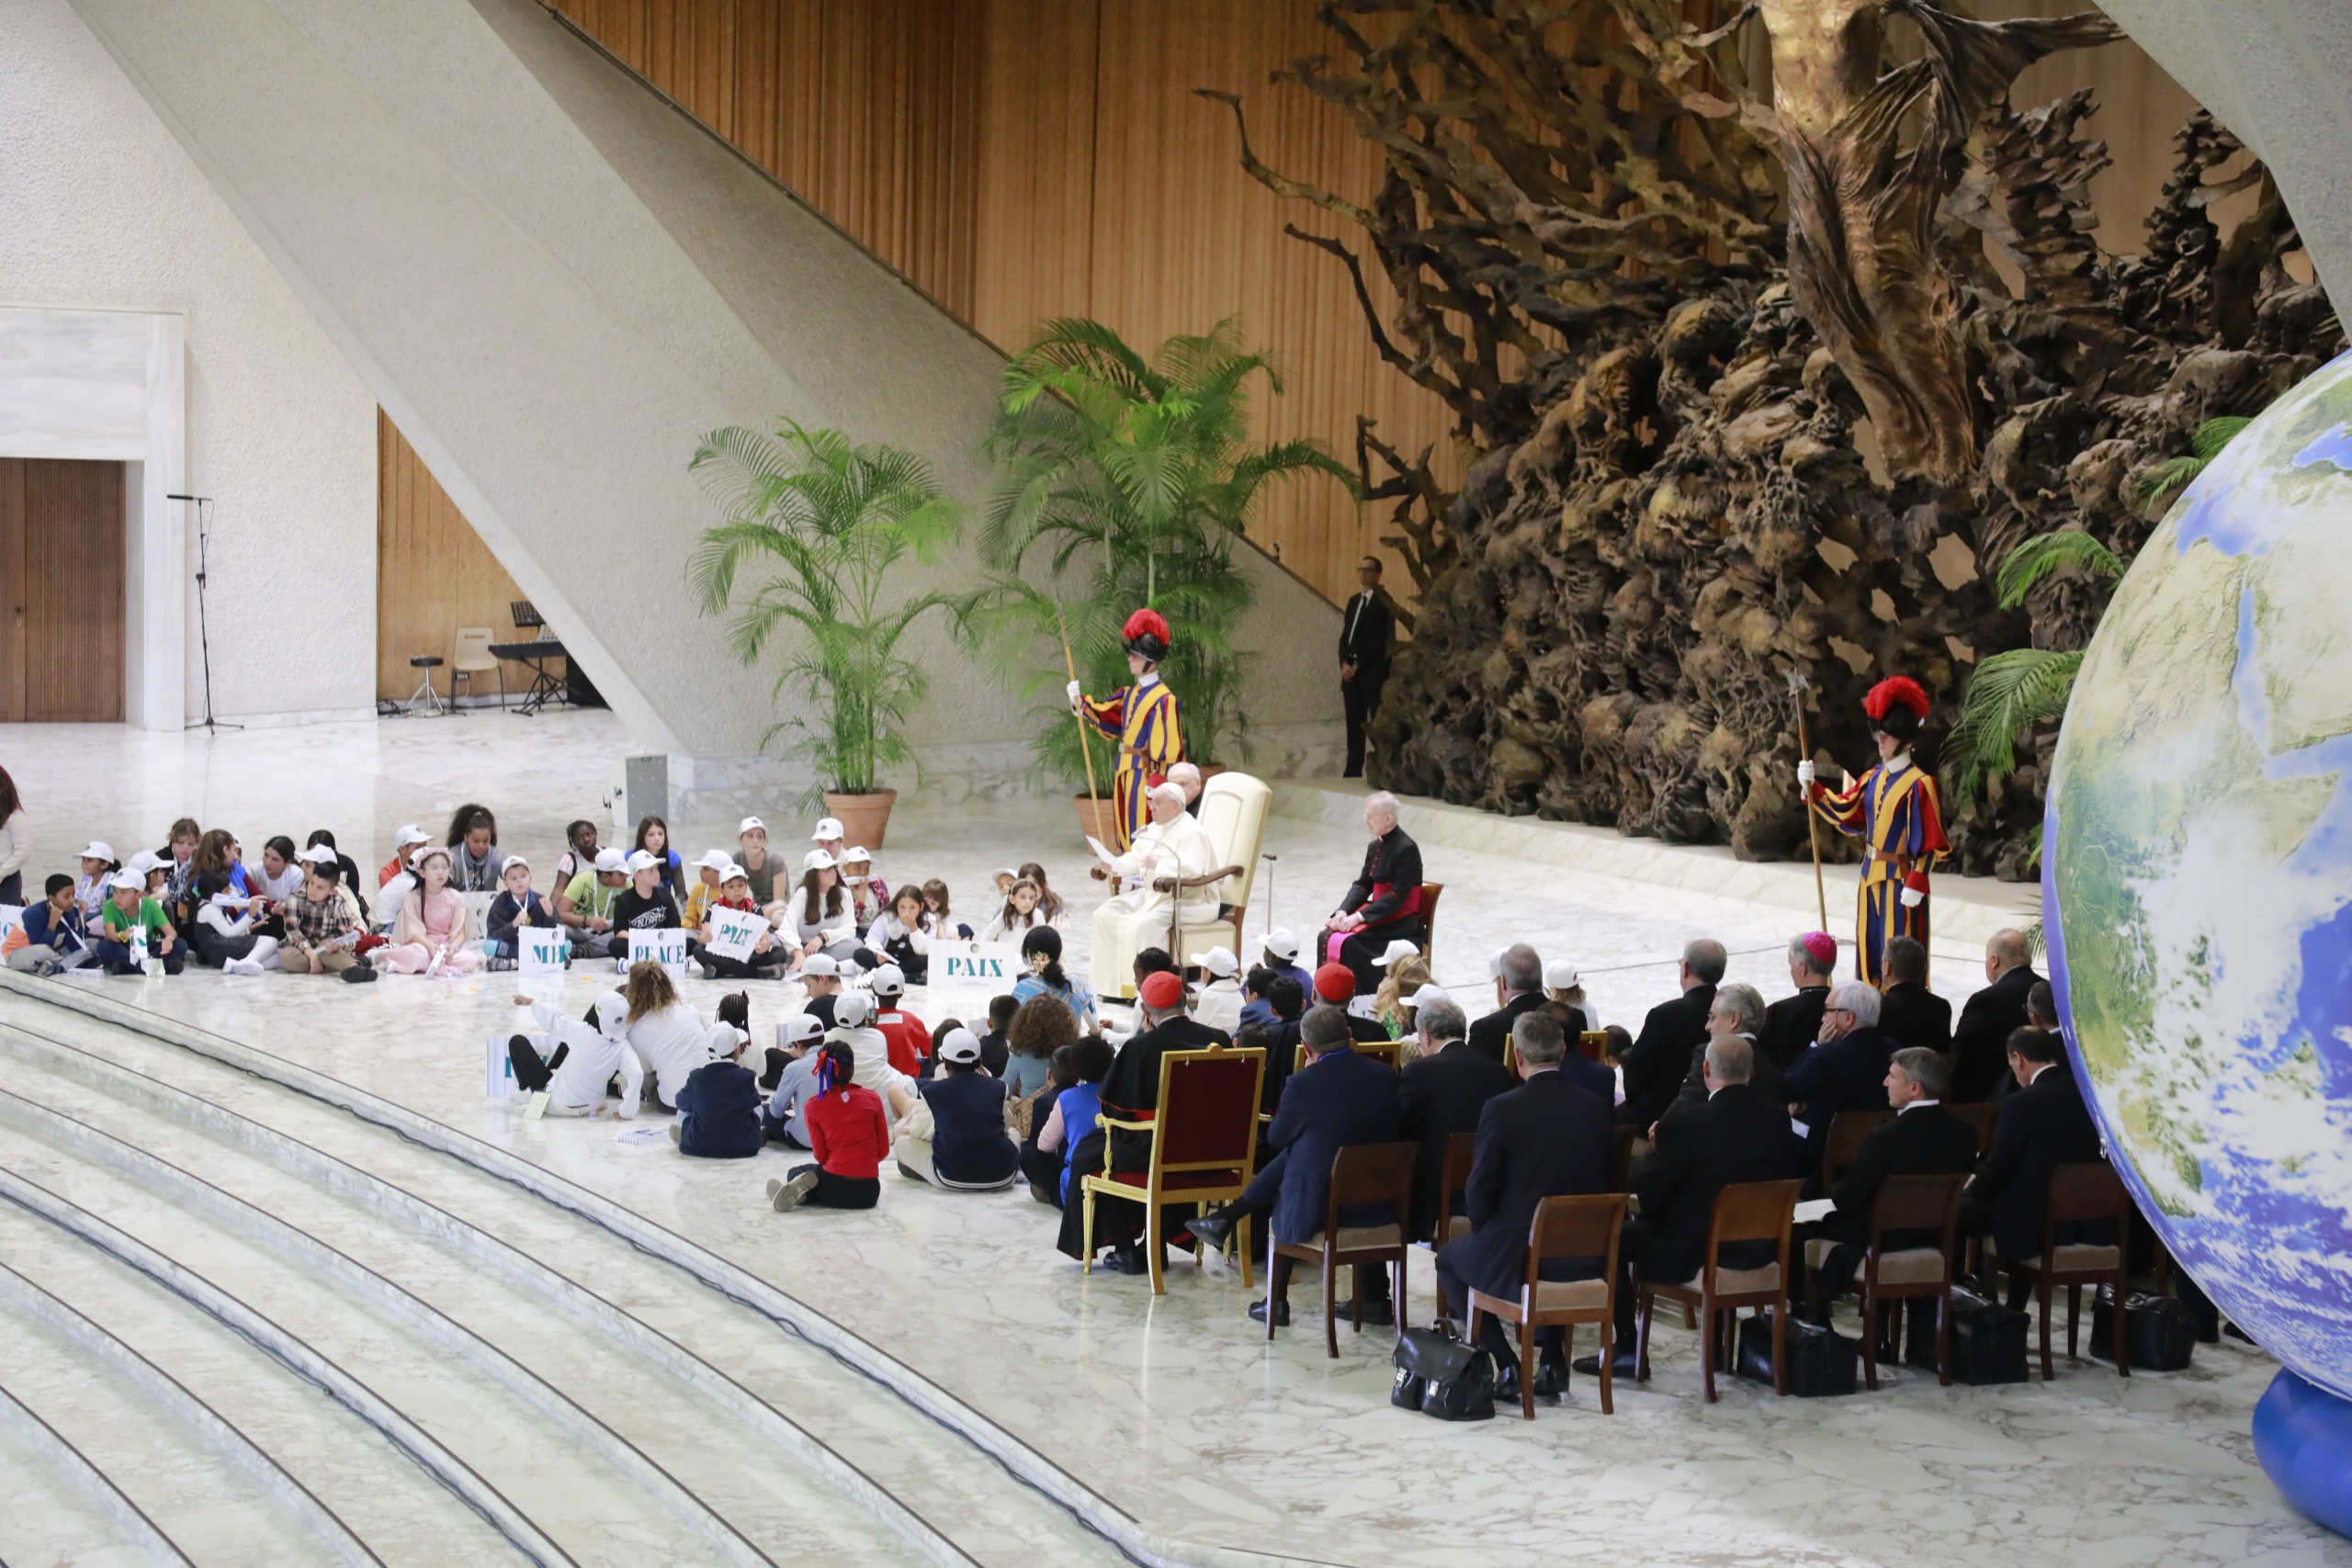 Vatican News. "I bambini incontrano il Papa", la diretta completa dell'evento